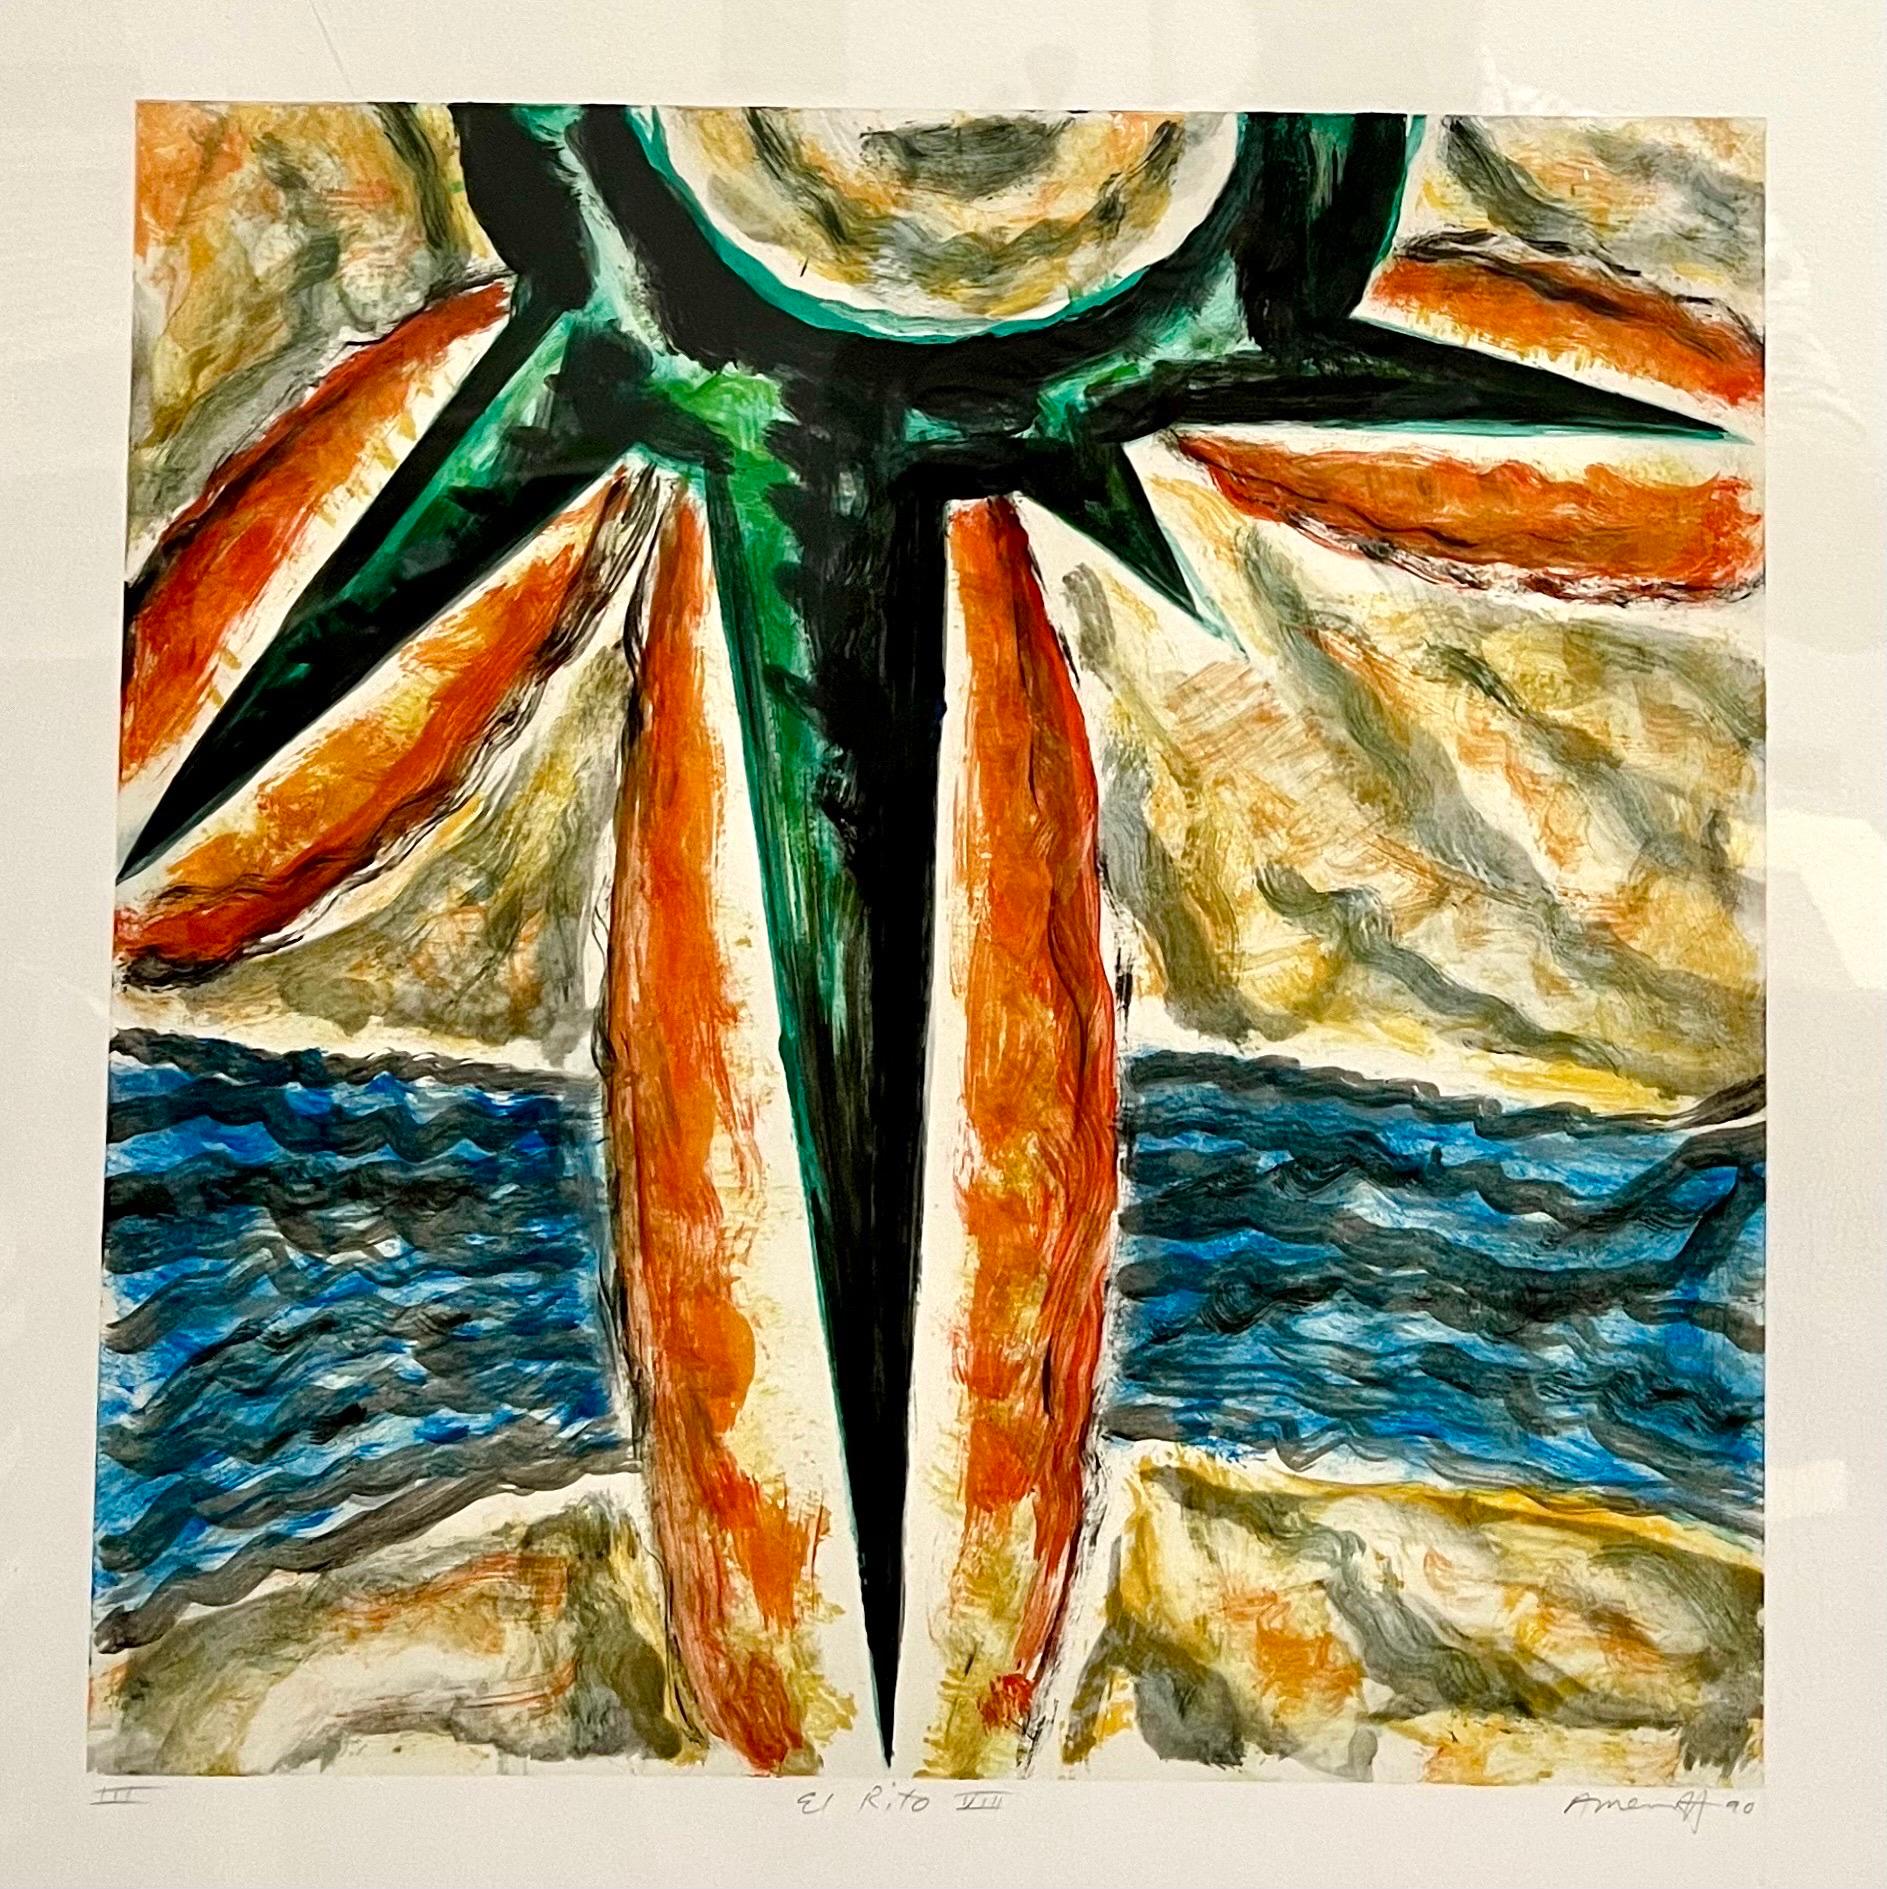 Gregory Amenoff (zeitgenössischer amerikanischer abstrakter Maler, geb. 1948),  
Monotypie Monoprint (1990)
Handsigniert mit Bleistift unten rechts
Platte: 16 x 16 Zoll
Abmessungen des Rahmens: 35 1/8 x 29 1/8 x 1 5/8 Zoll, Holzrahmen mit